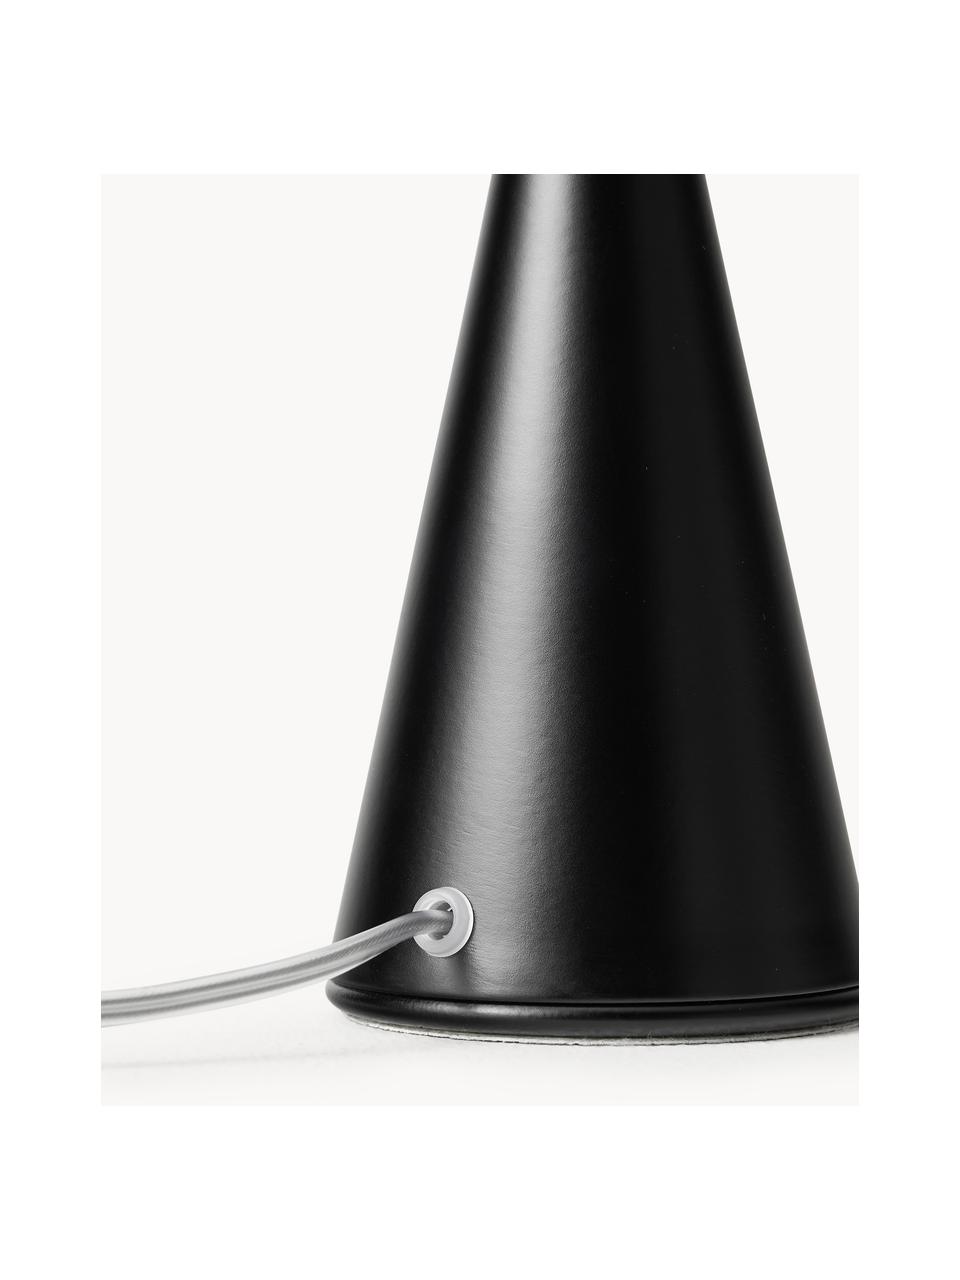 Kleine tafellamp Bilia, handgemaakt, Lampenkap: glas, Wit, zwart, Ø 12 x H 26 cm